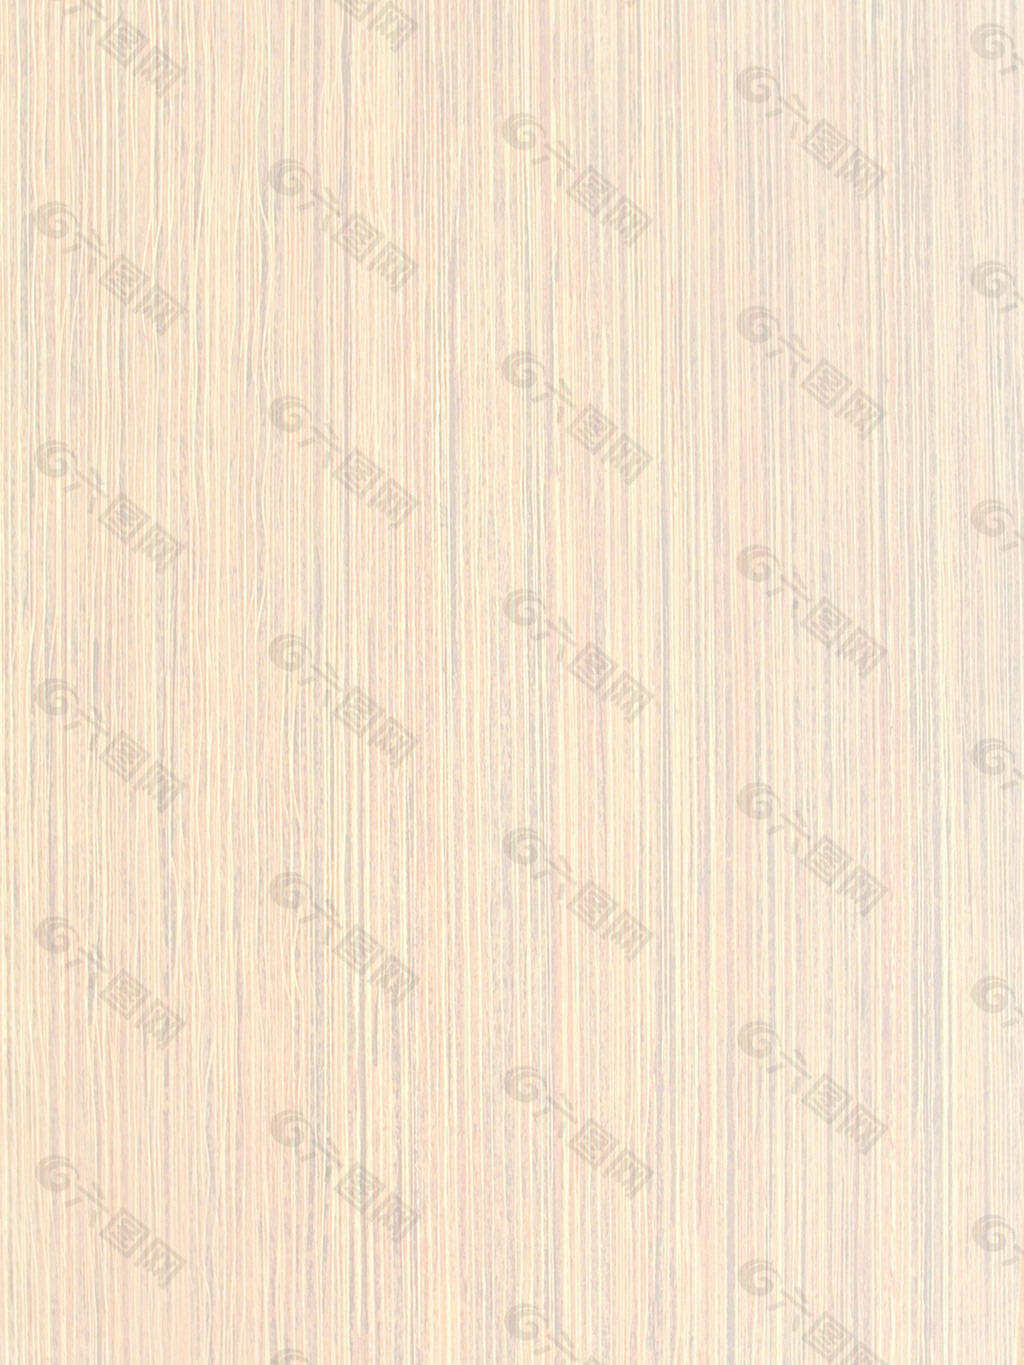 木材木纹木纹素材效果图3d模型 579